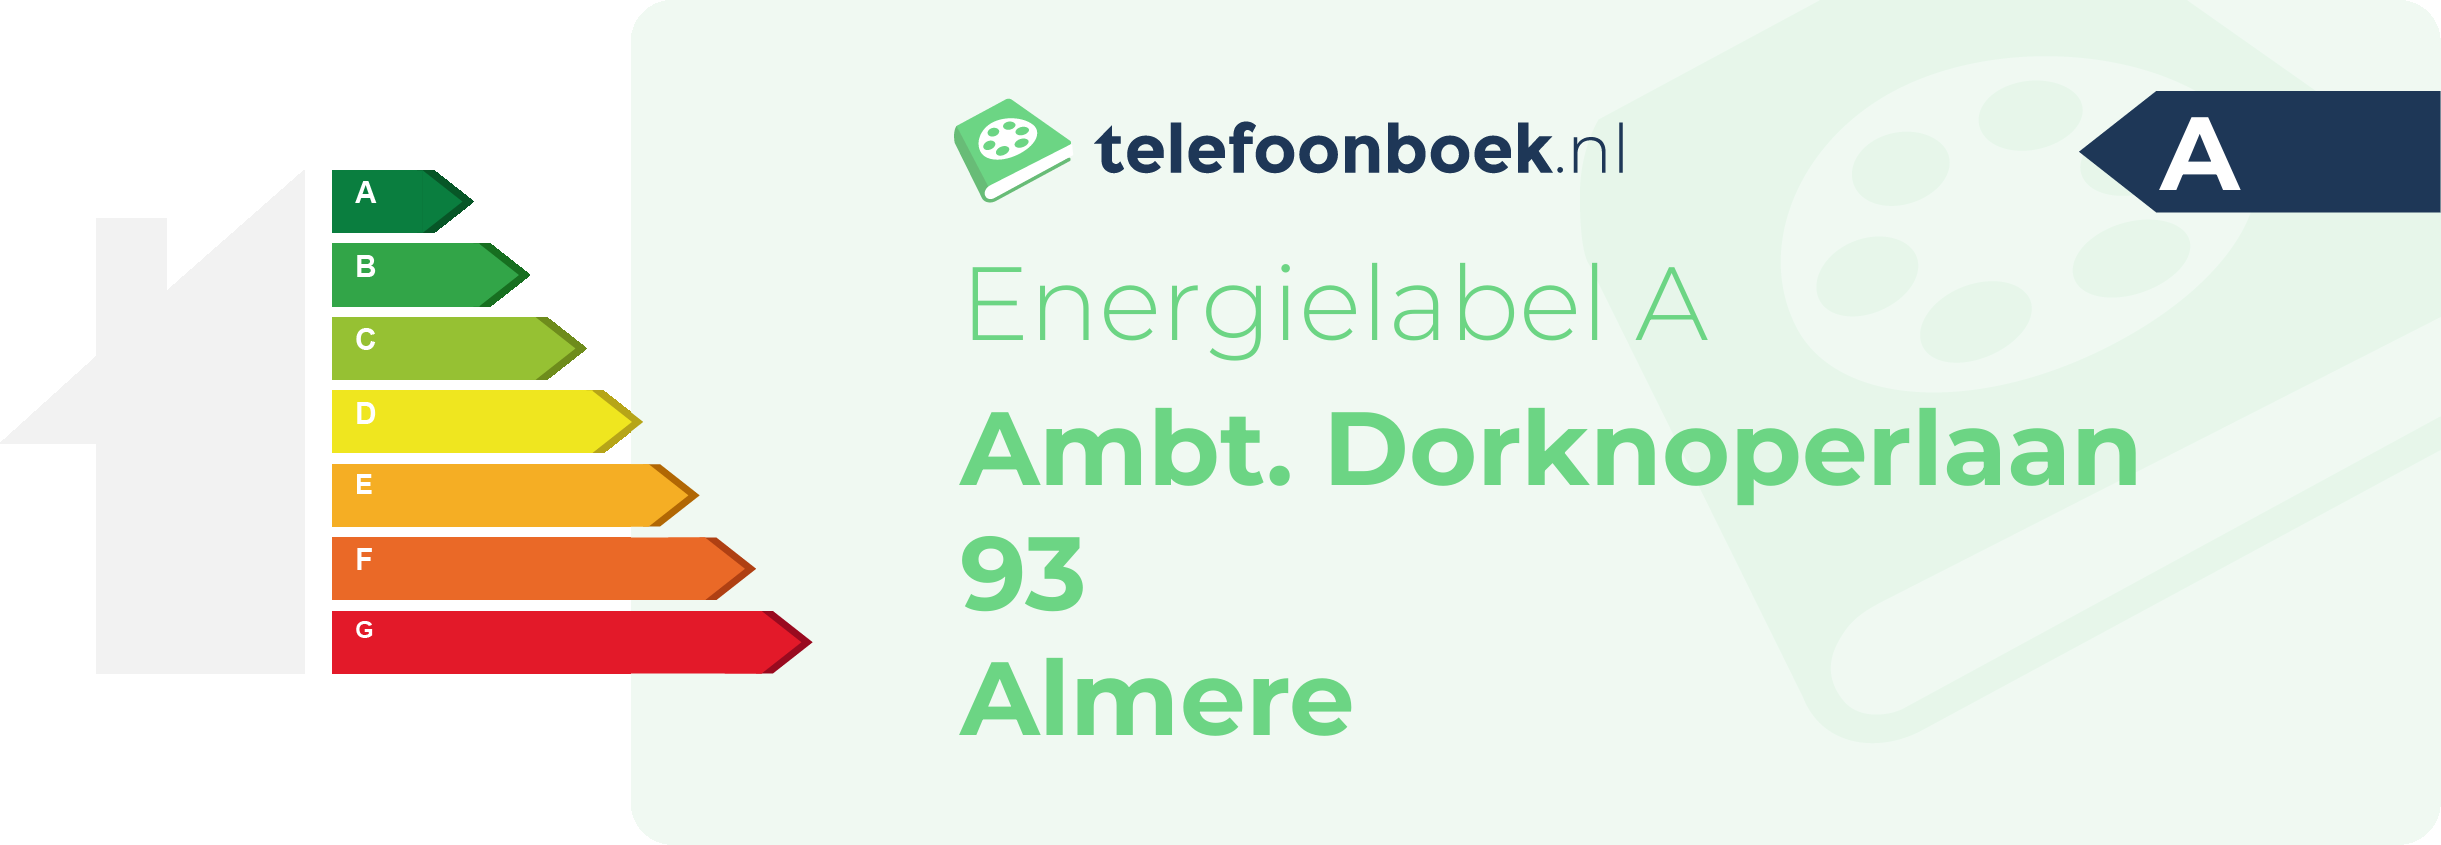 Energielabel Ambt. Dorknoperlaan 93 Almere